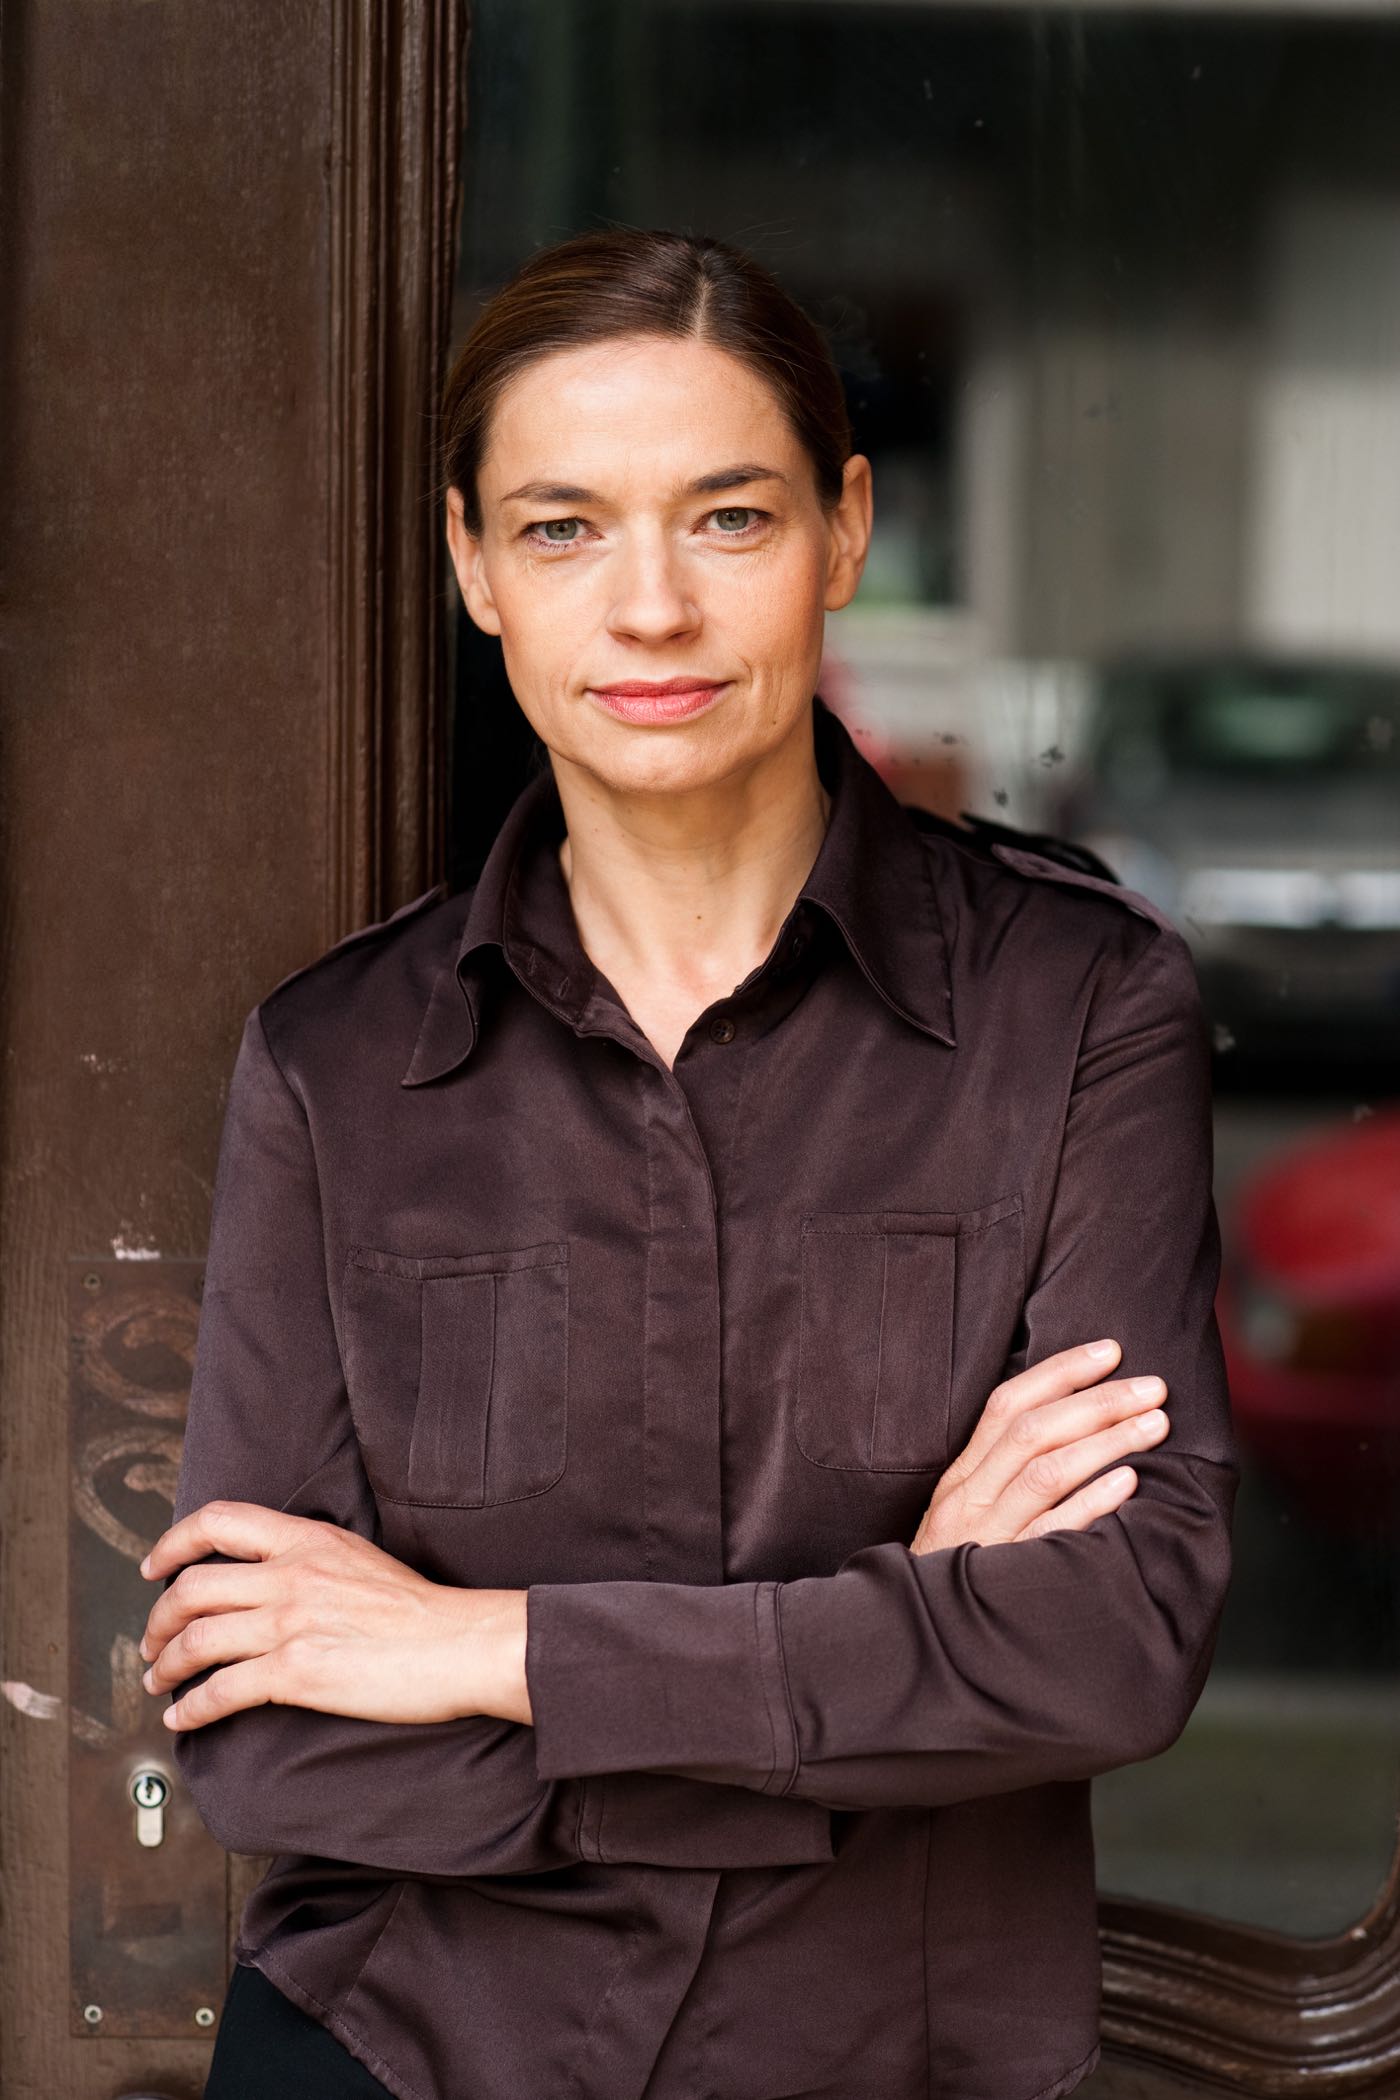 Ute Wieckhorst, Schauspielerin (Foto: Heike Steinweg, 2015)